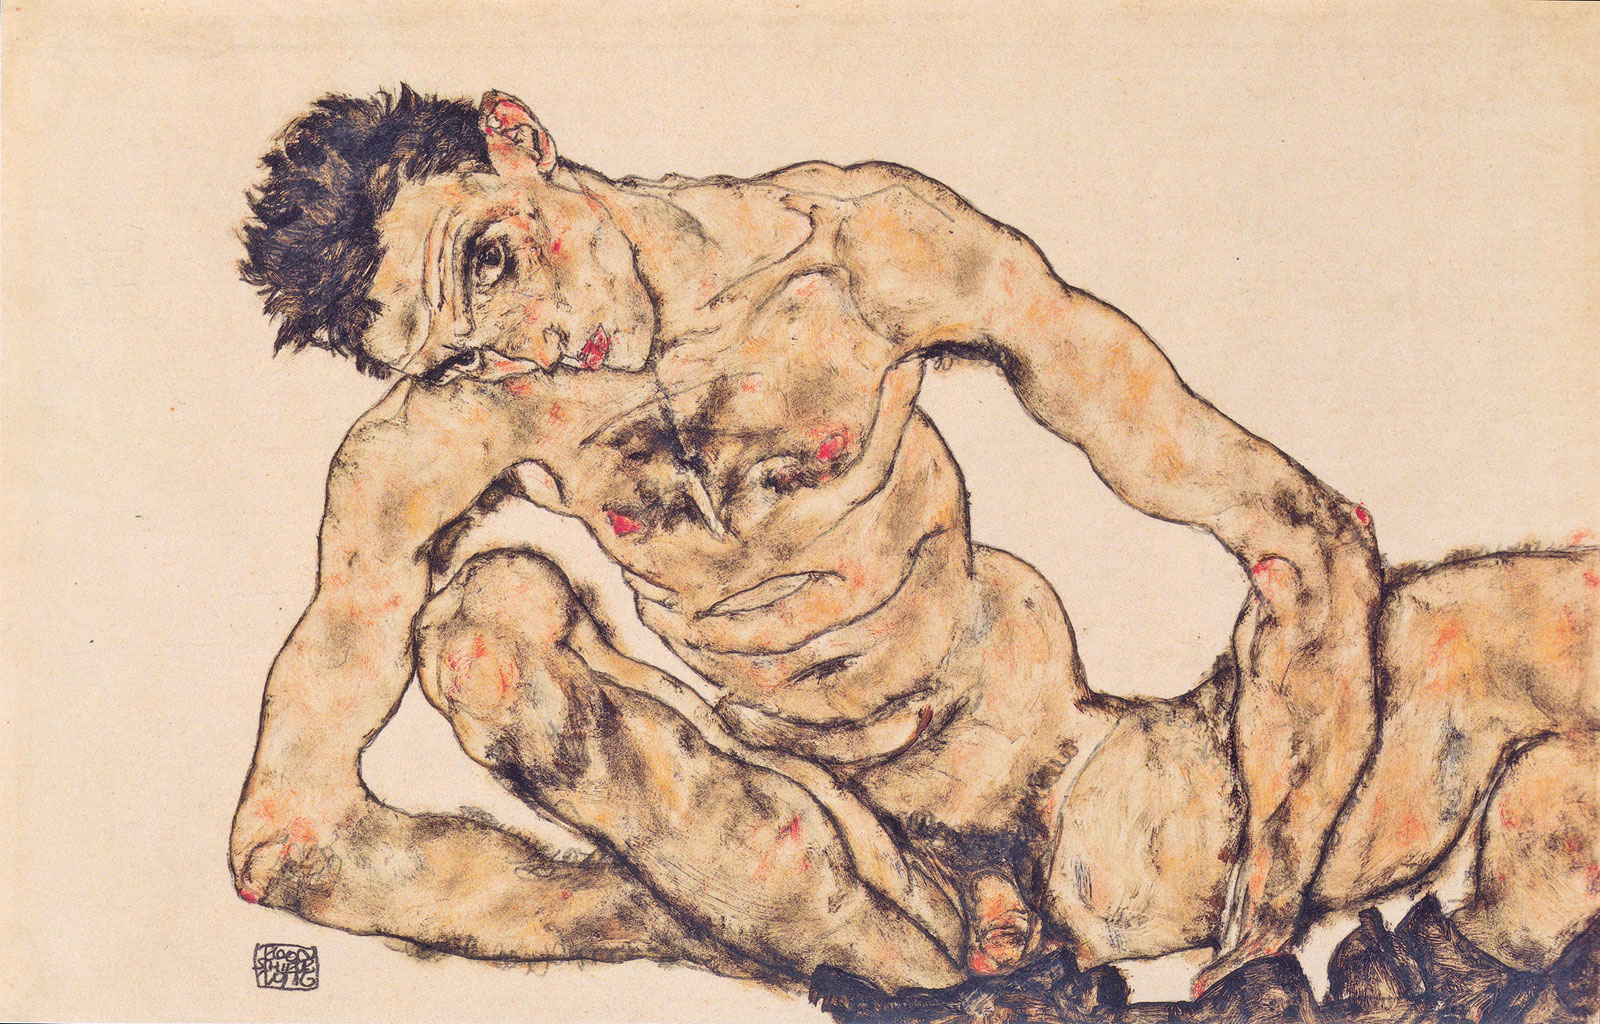 Egon Schiele, *Acto autorretrato*, 1916. Albertina Museum